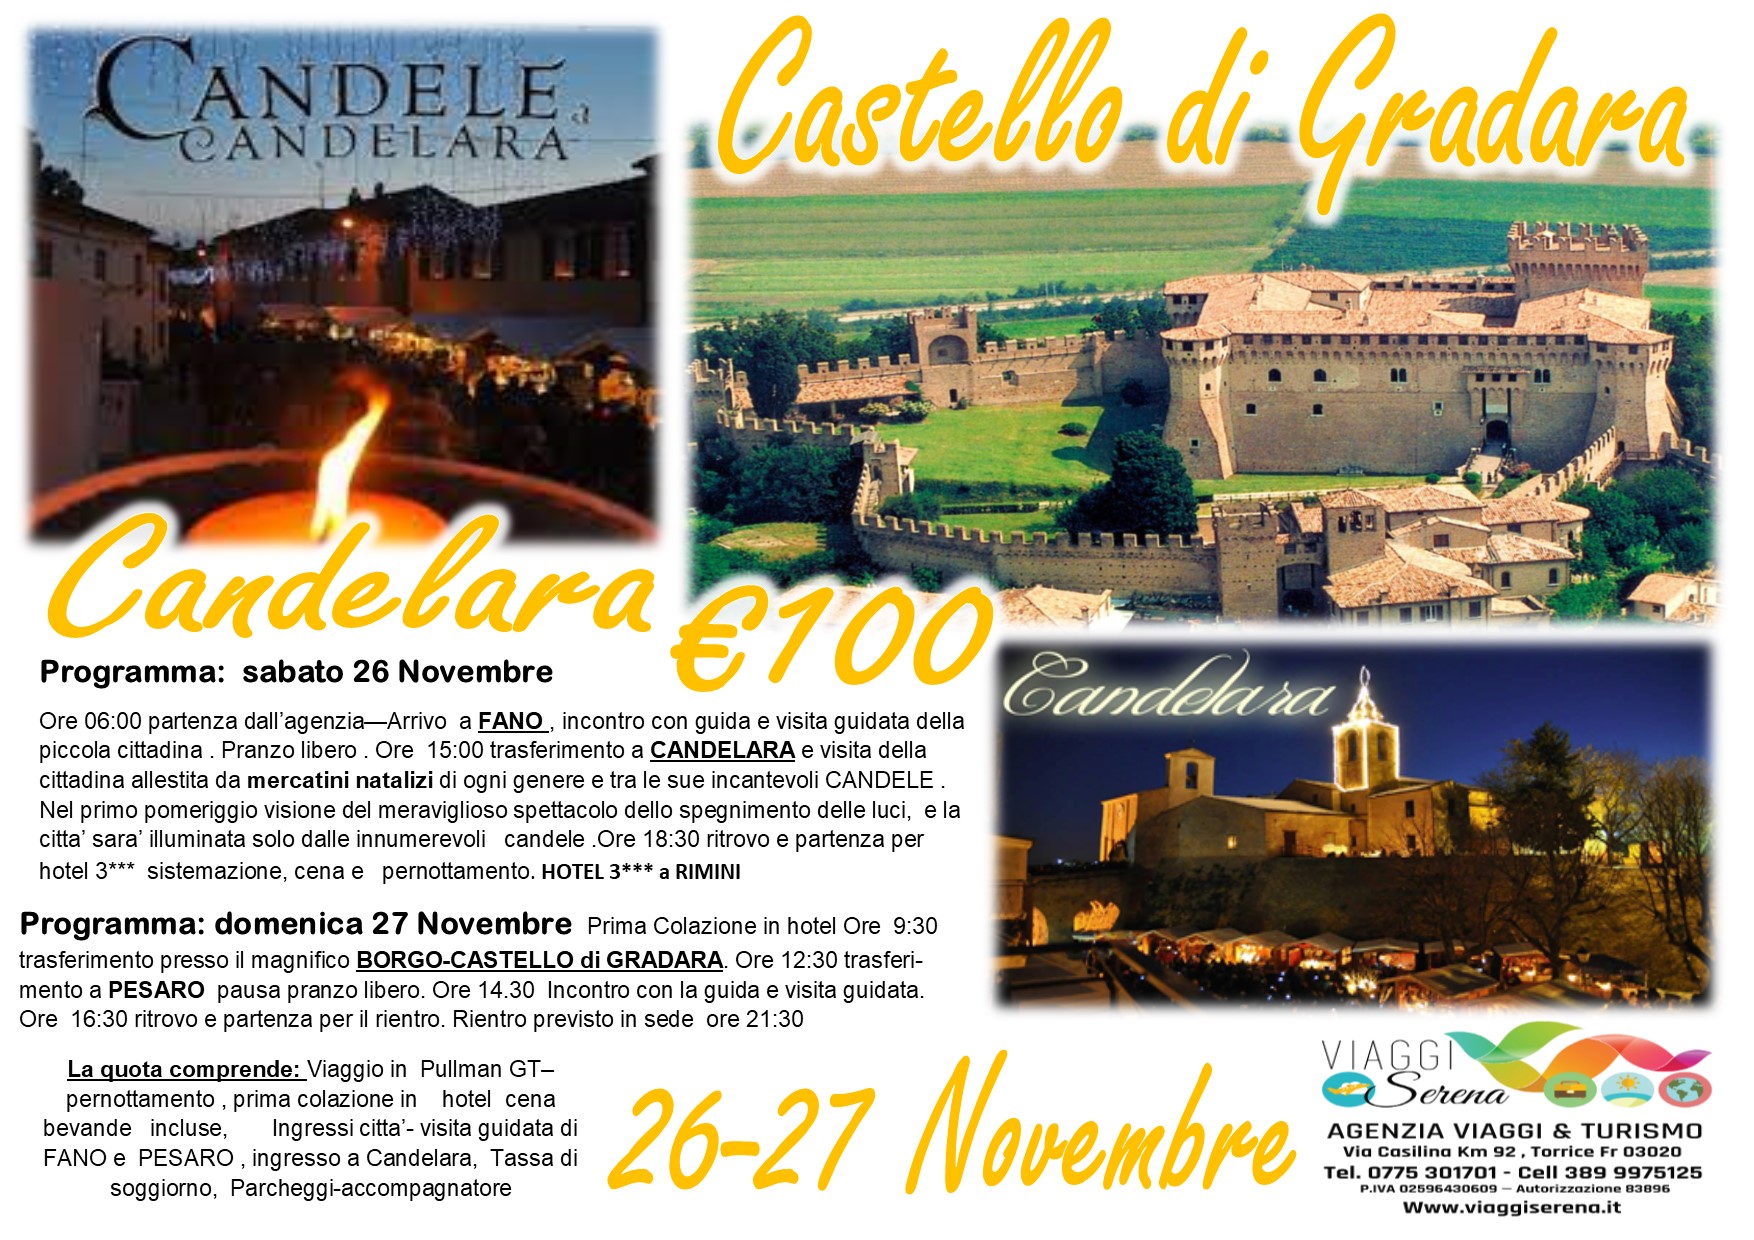 Viaggi di Gruppo: Candelara , Castello di Gradara , Fano & Pesaro 26-27 Novembre € 100,00